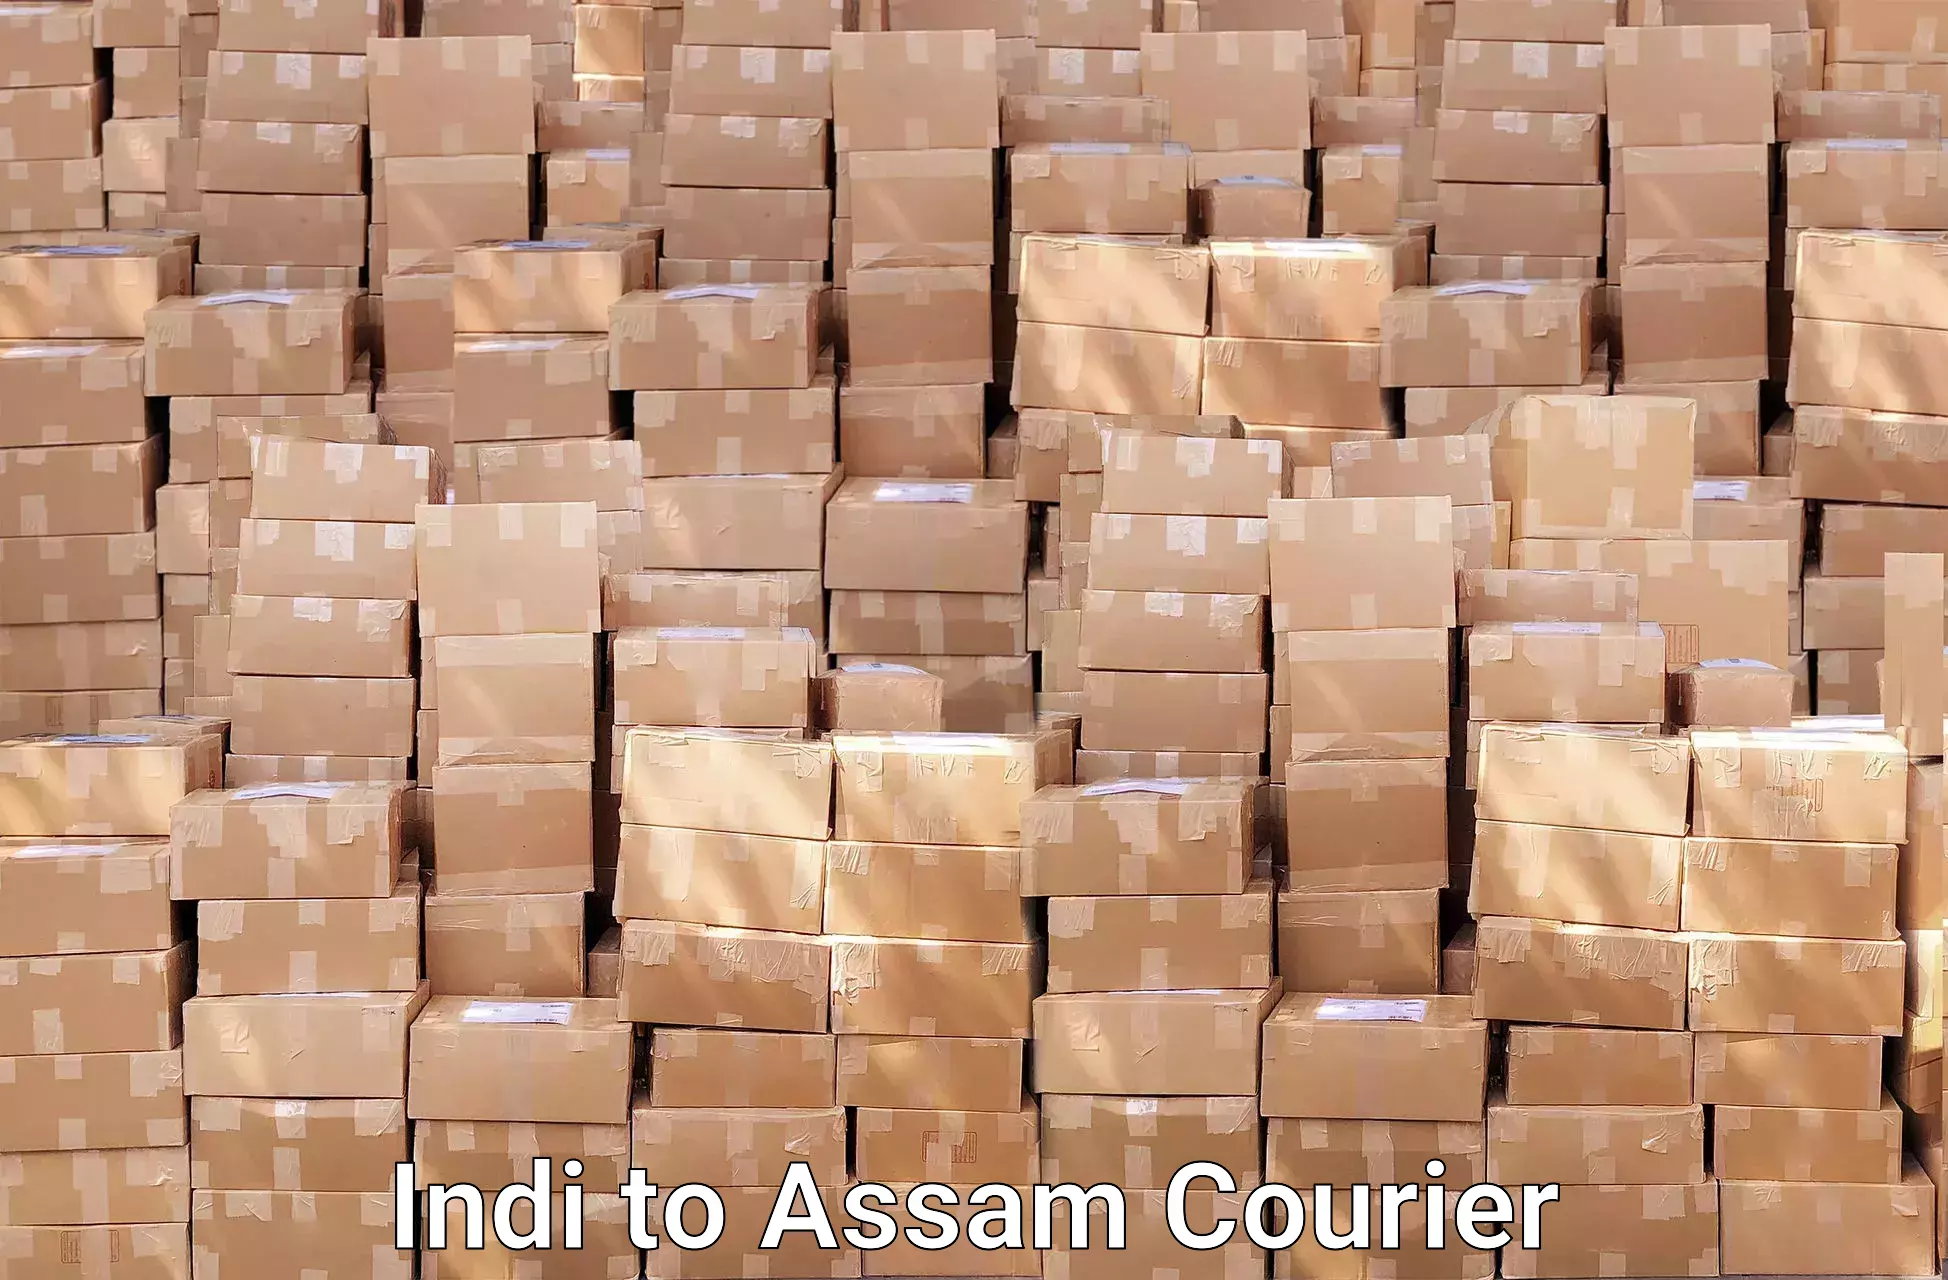 Skilled furniture transport in Indi to Assam